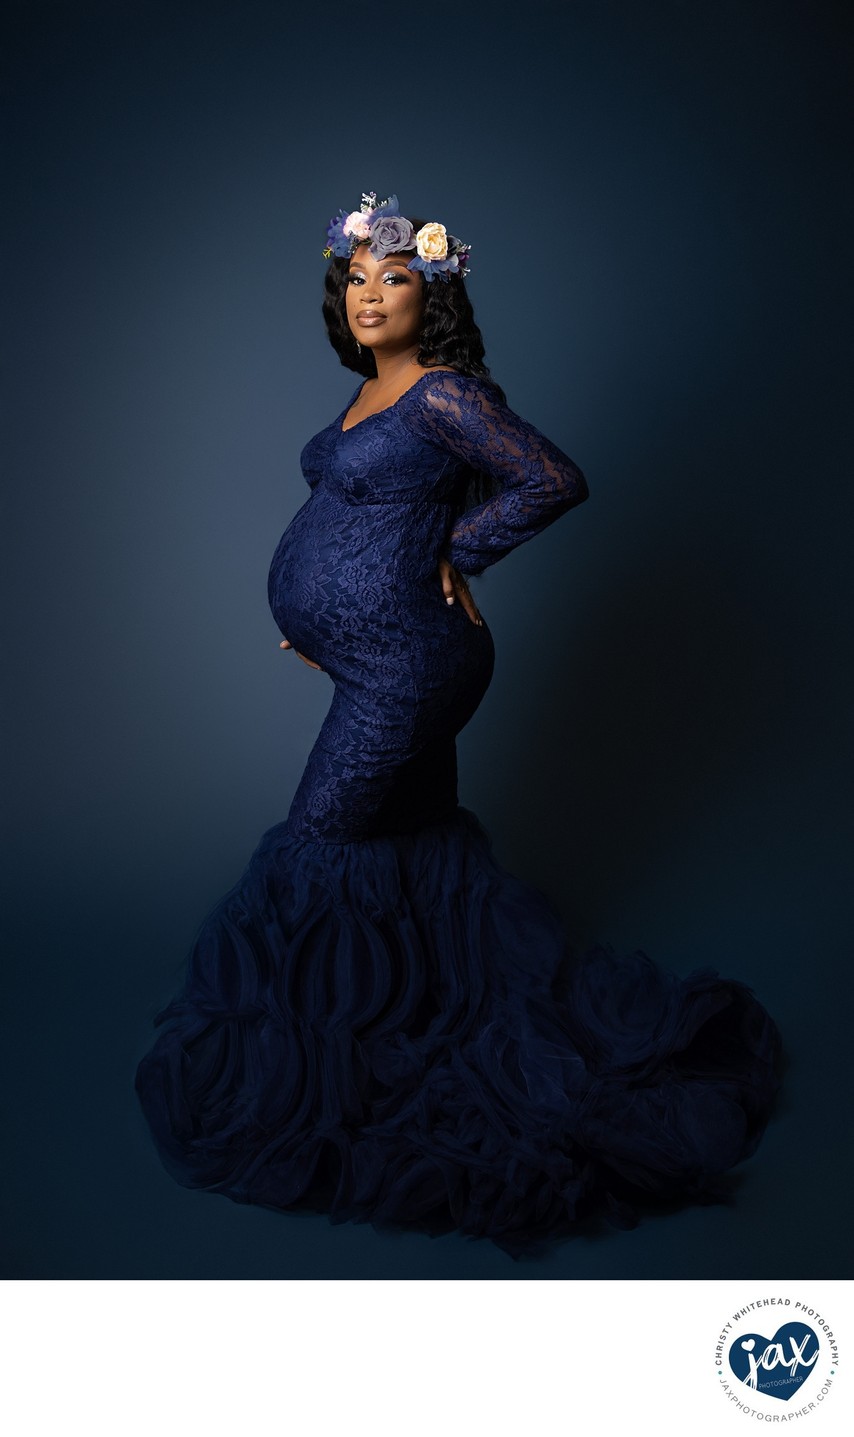 Gorgeous black female pregnancy photos florida